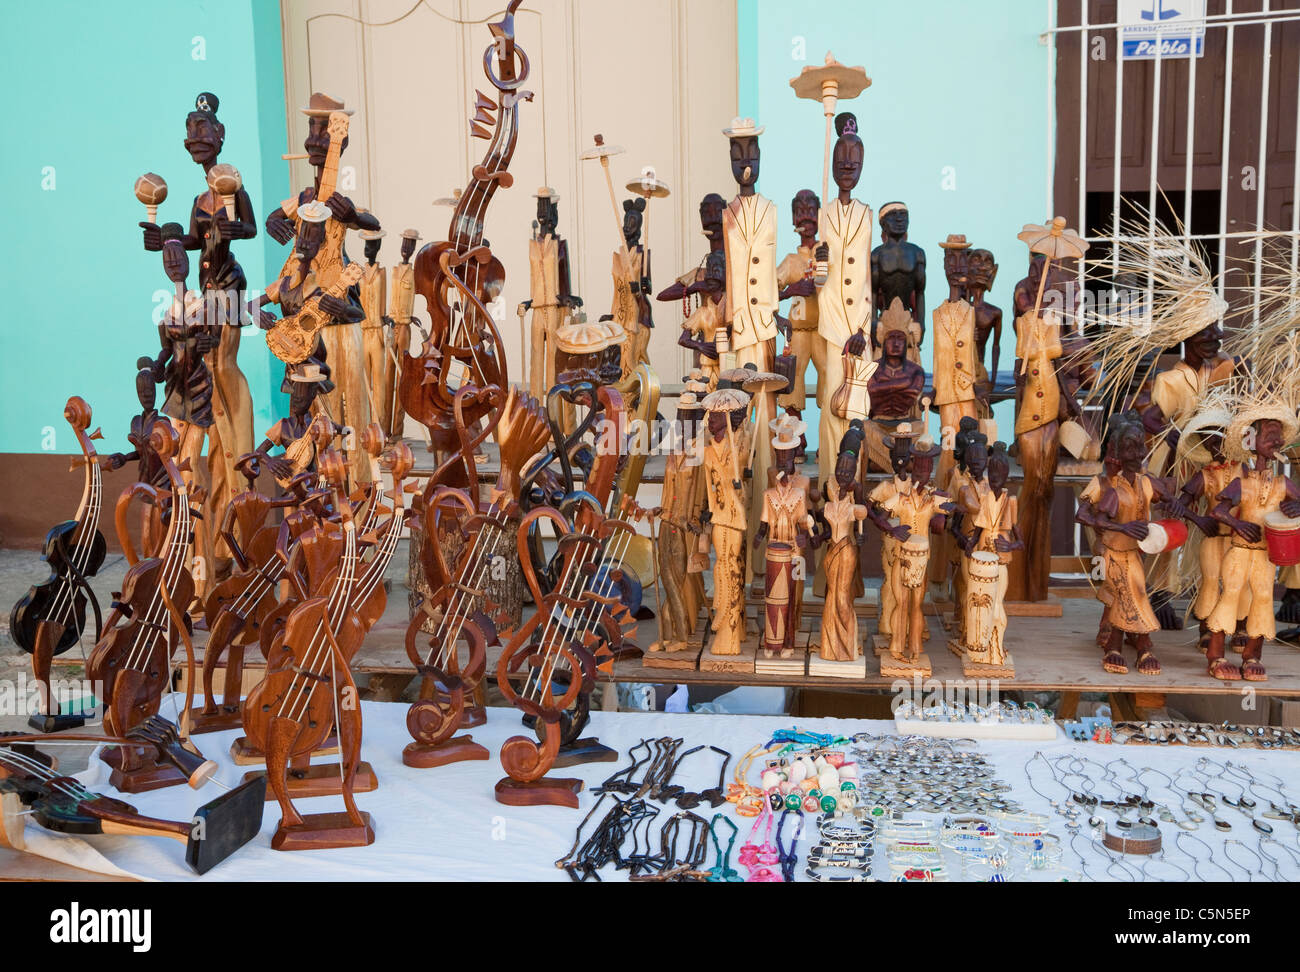 Cuba, Trinidad. Les sculptures sur bois dans l'artisanat marché. Banque D'Images